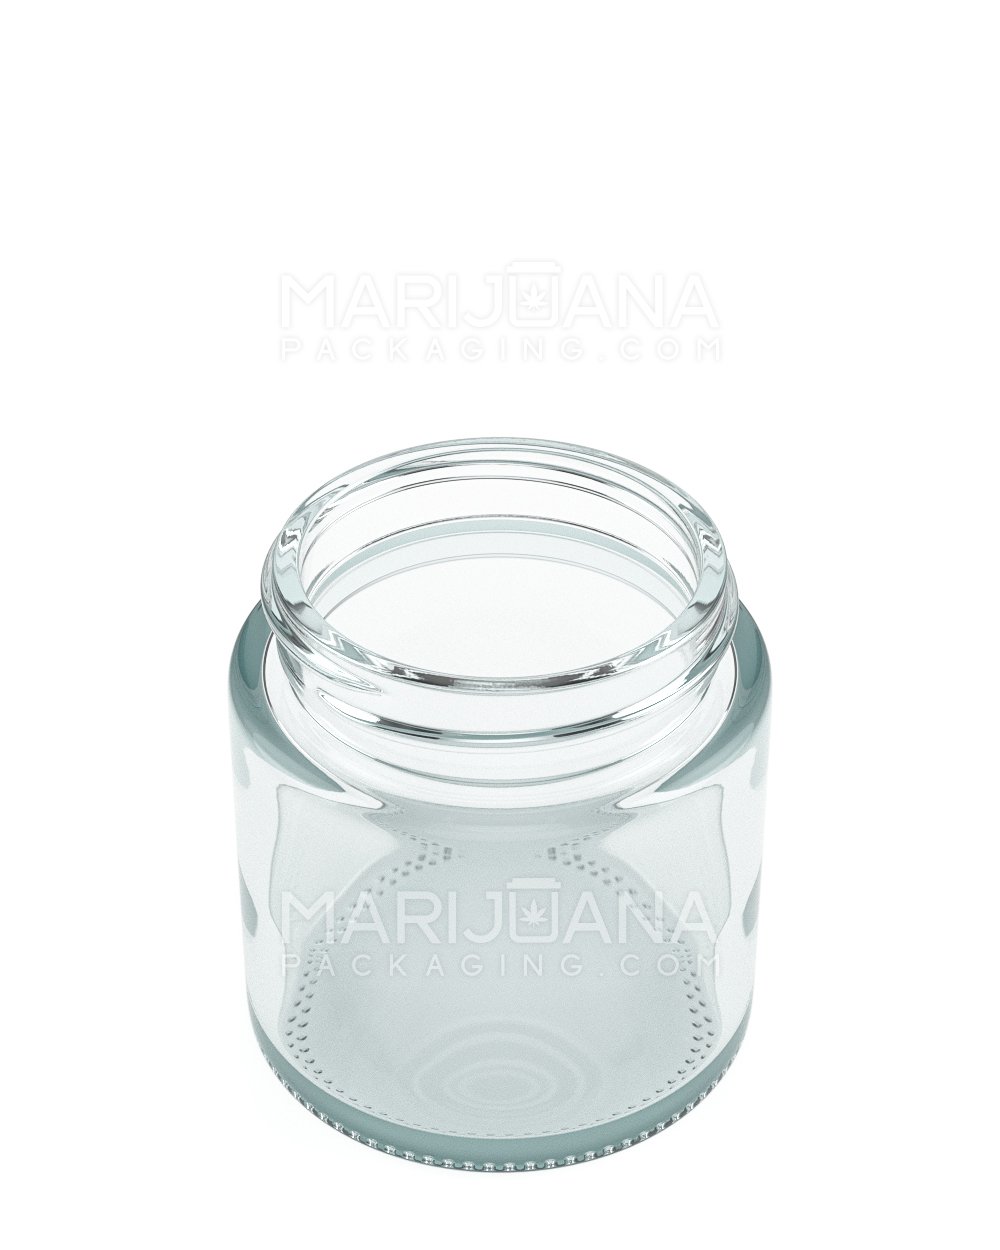 Cannascape® Glass Cannabis Stash Jar